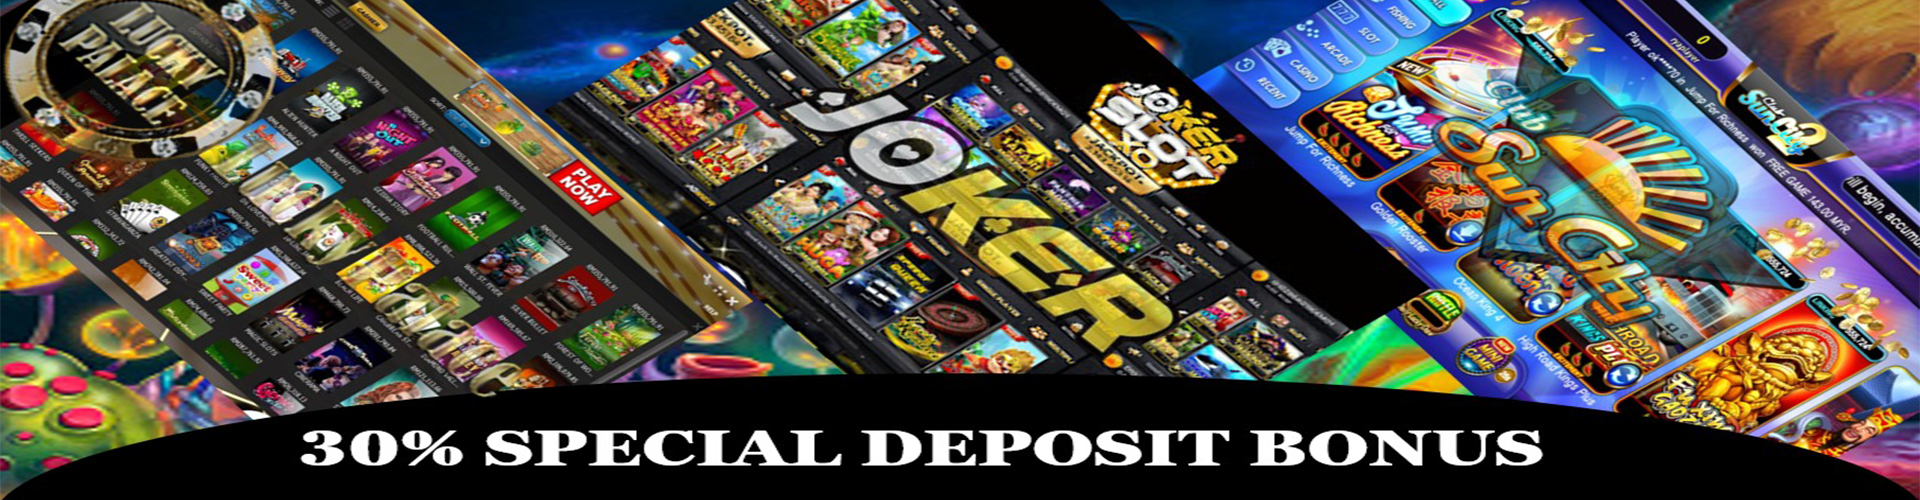 Online Casino Malaysia 30% DEPOSIT SPECIAL BONUS